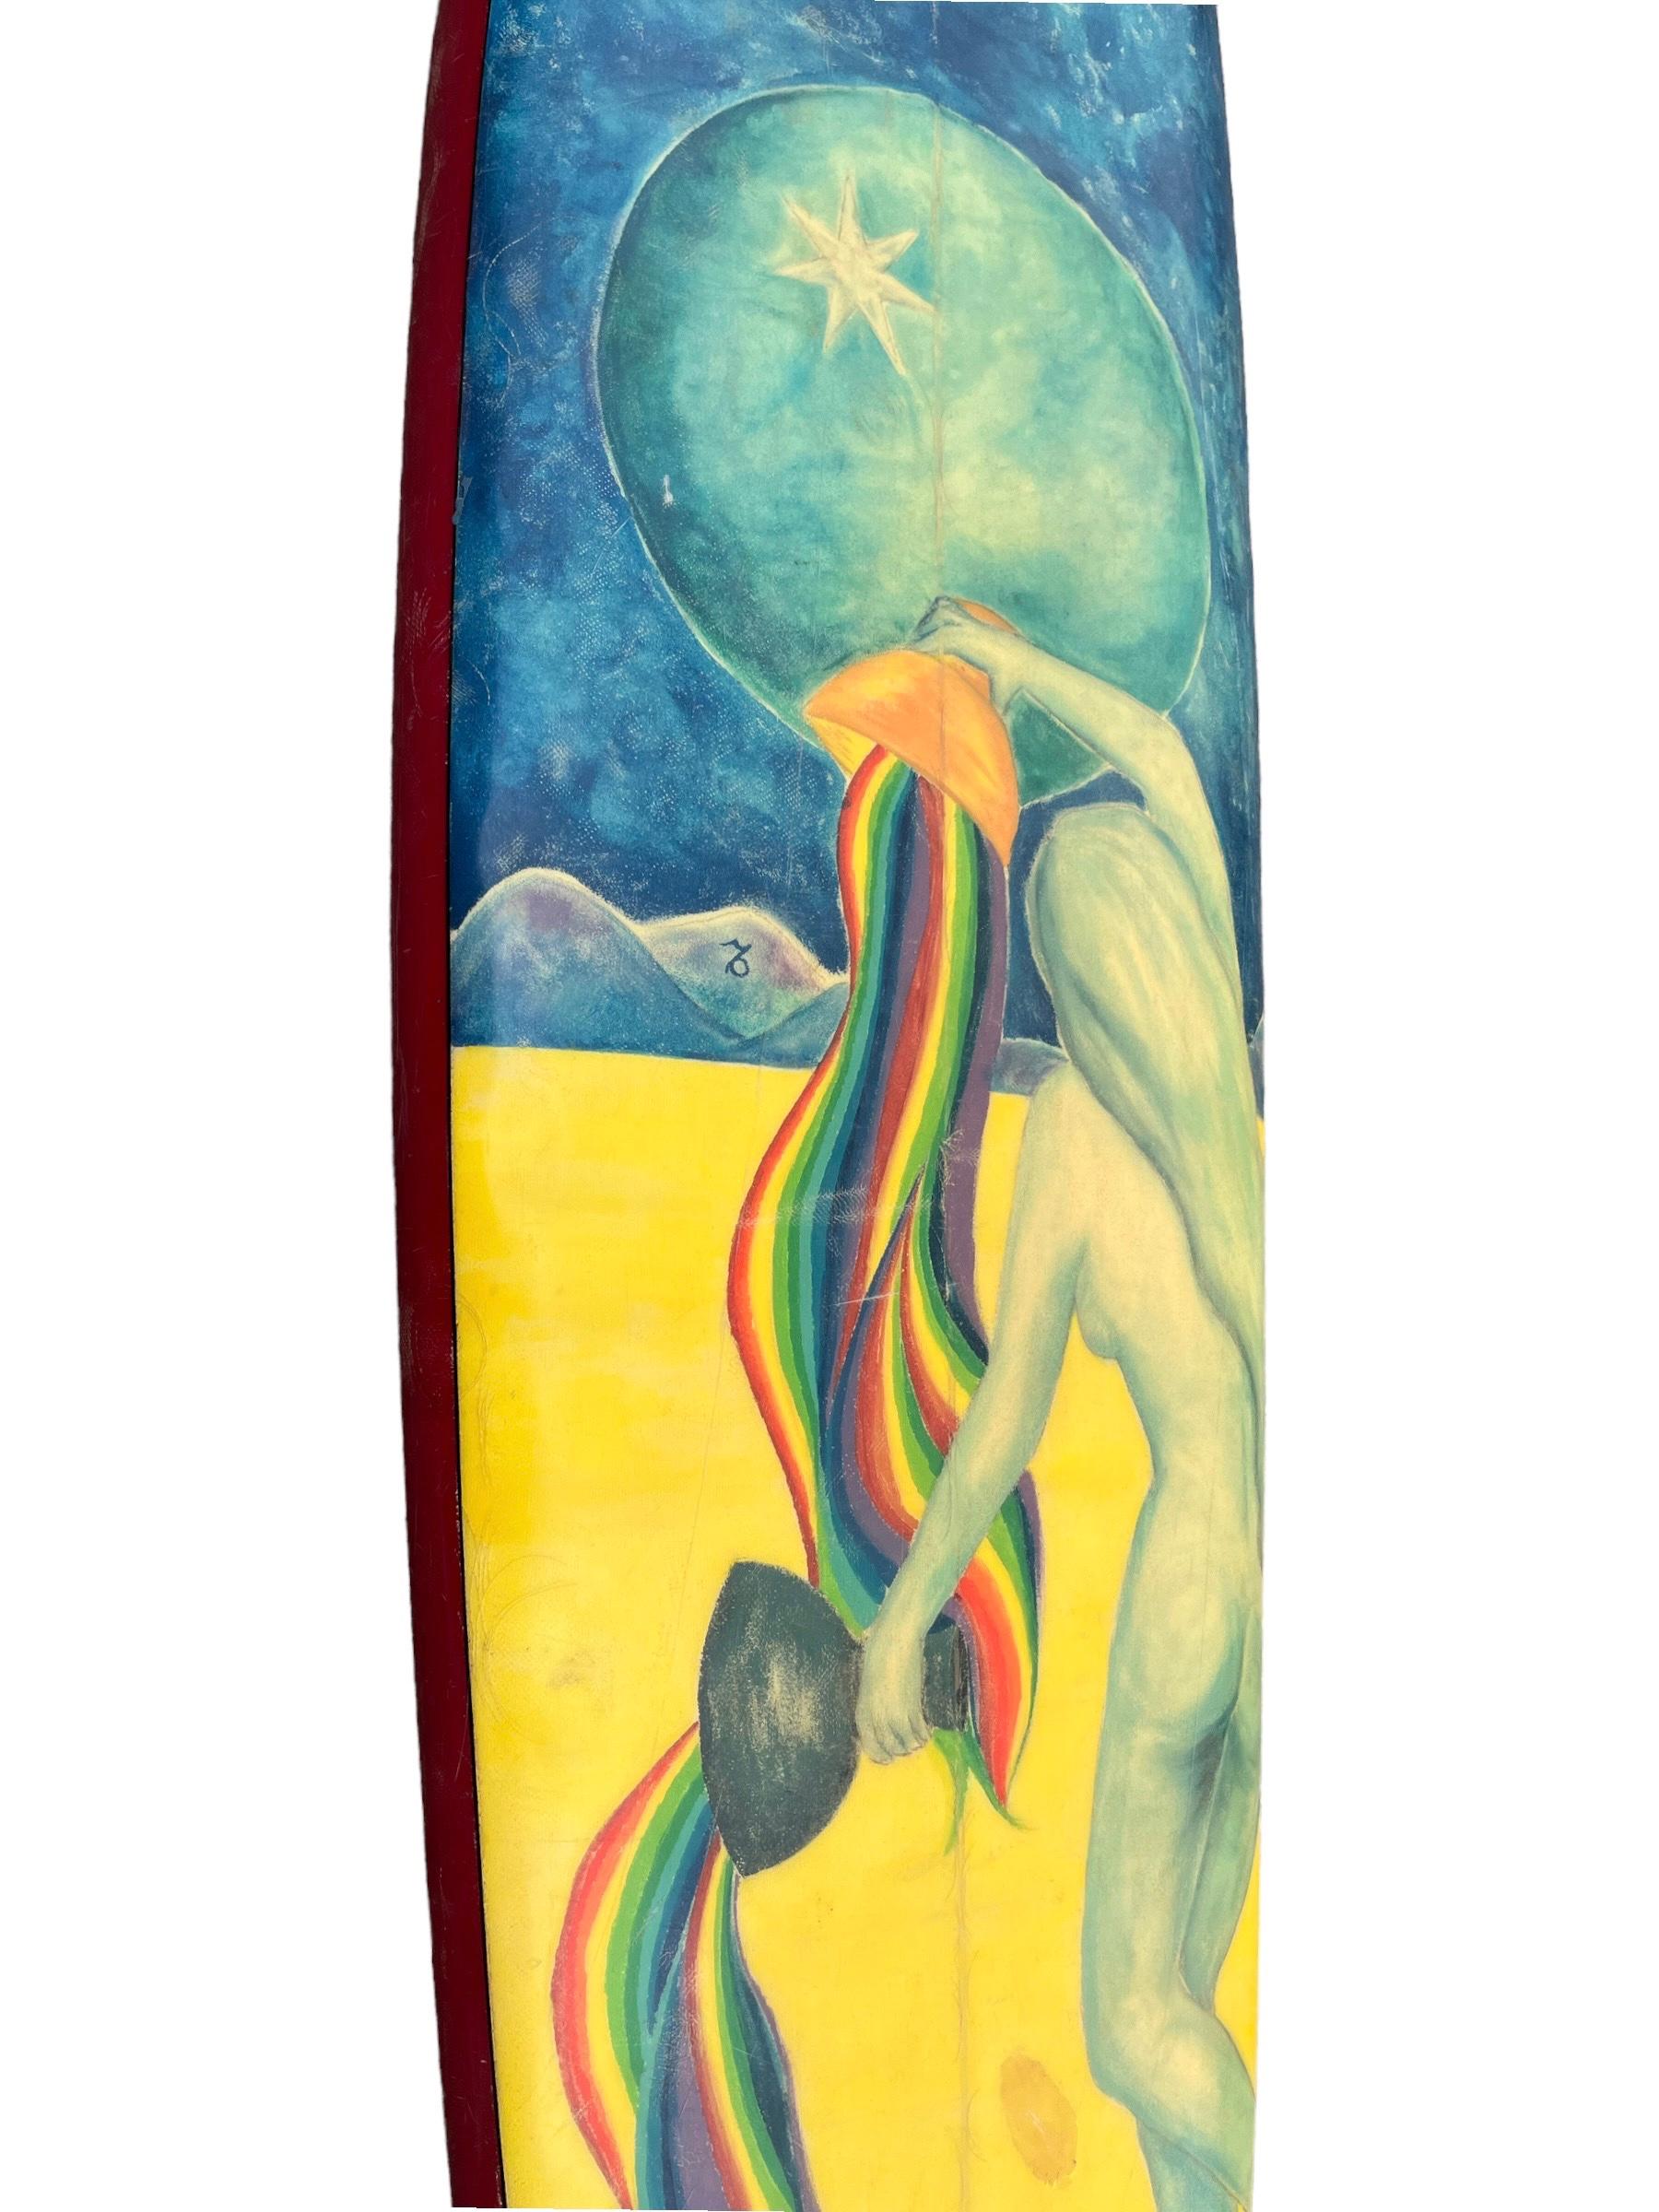 American Vintage 1970s McLeod La Jolla Windansea Artwork Surfboard For Sale